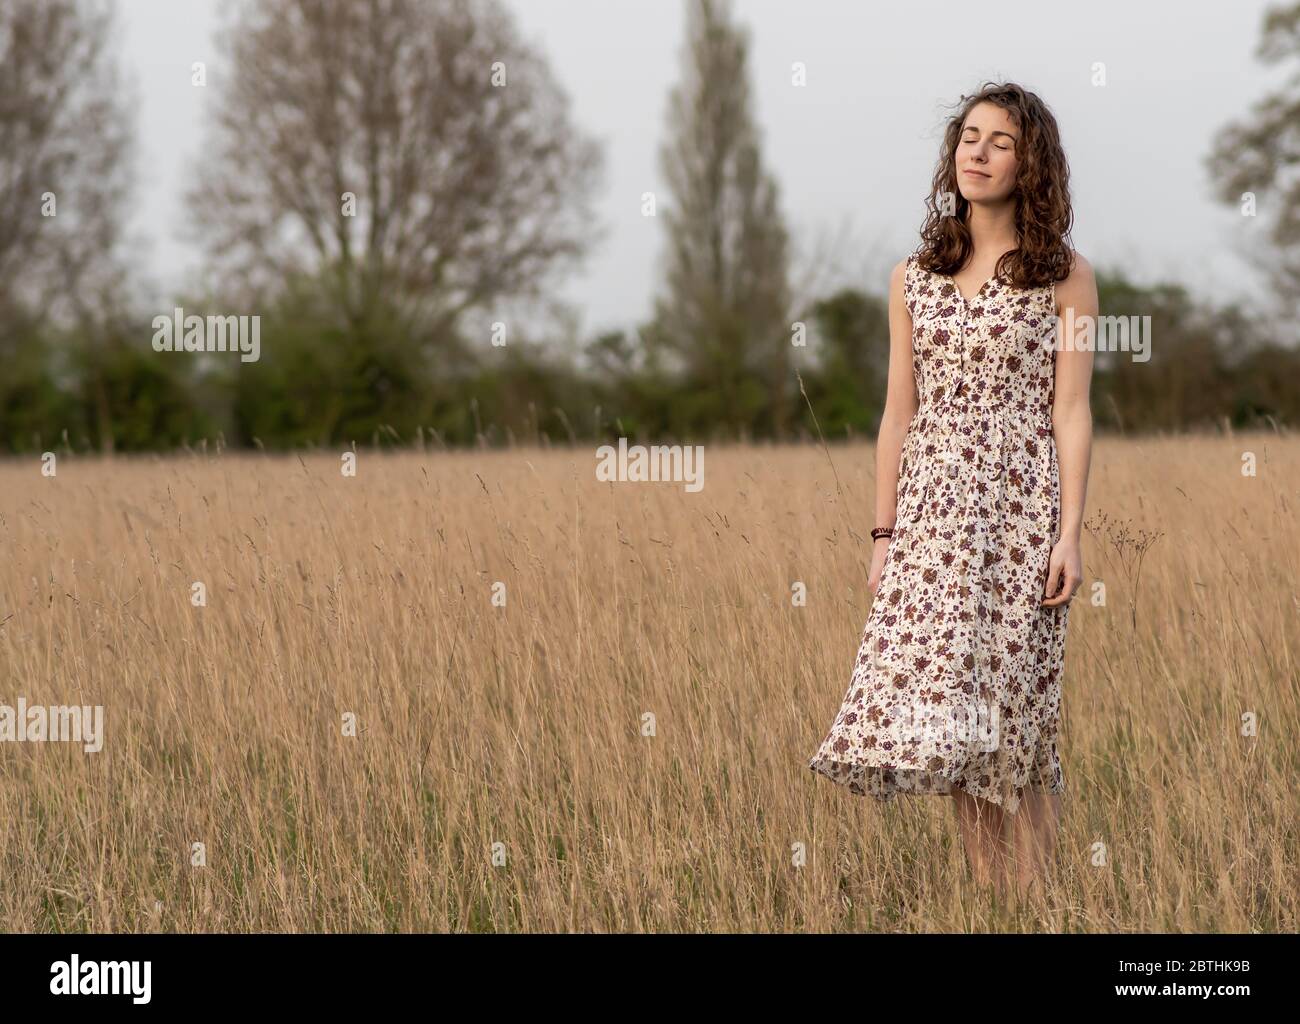 Eine schöne und gesunde junge Frau im Kleid tanzt friedlich meditierend und denkend in einem braunen Grasfeld bei Sonnenuntergang Stockfoto